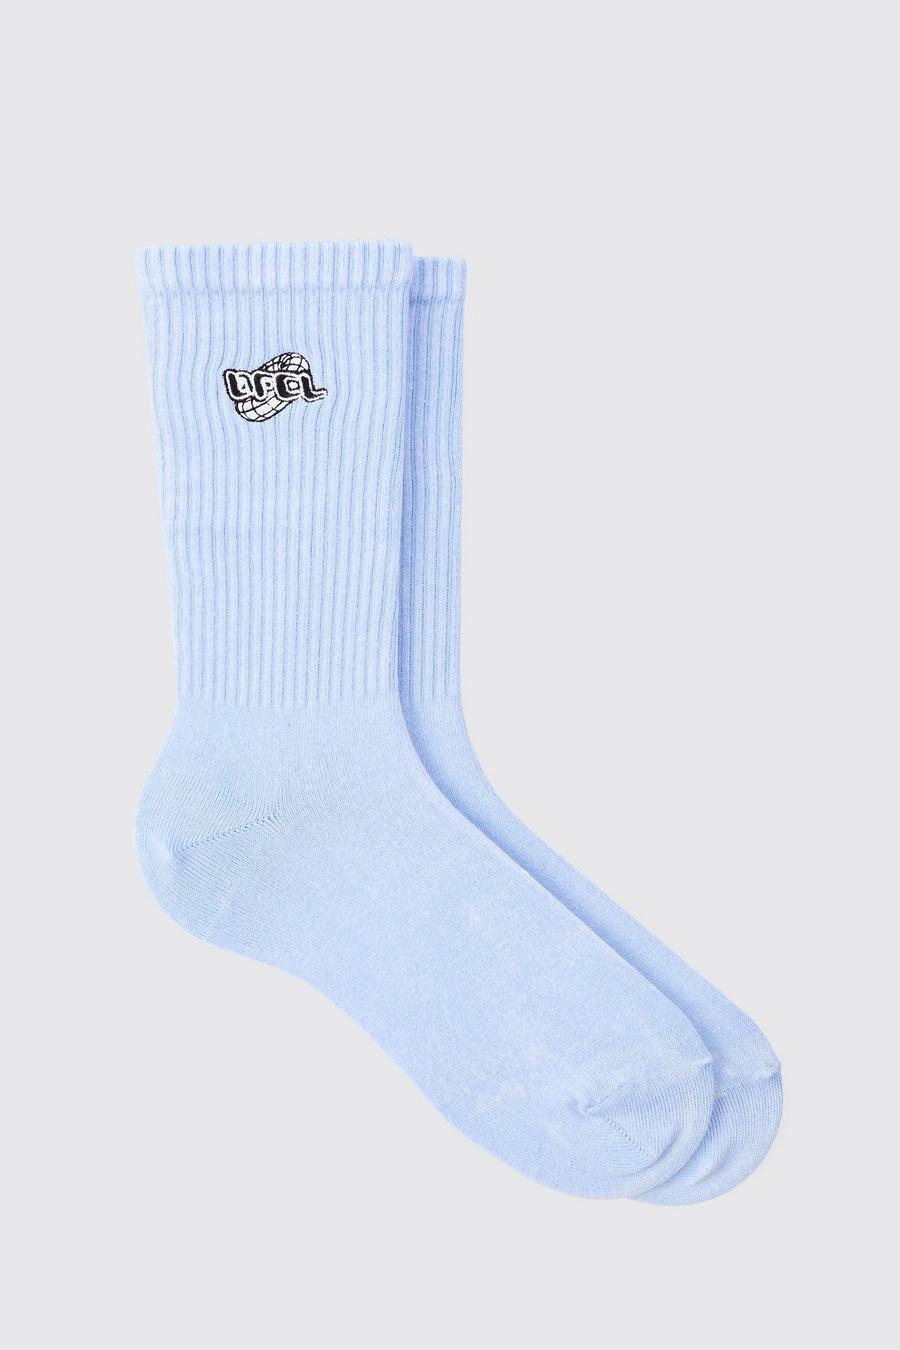 Acid Wash OFCL Embroidered Socks In Light Blue image number 1